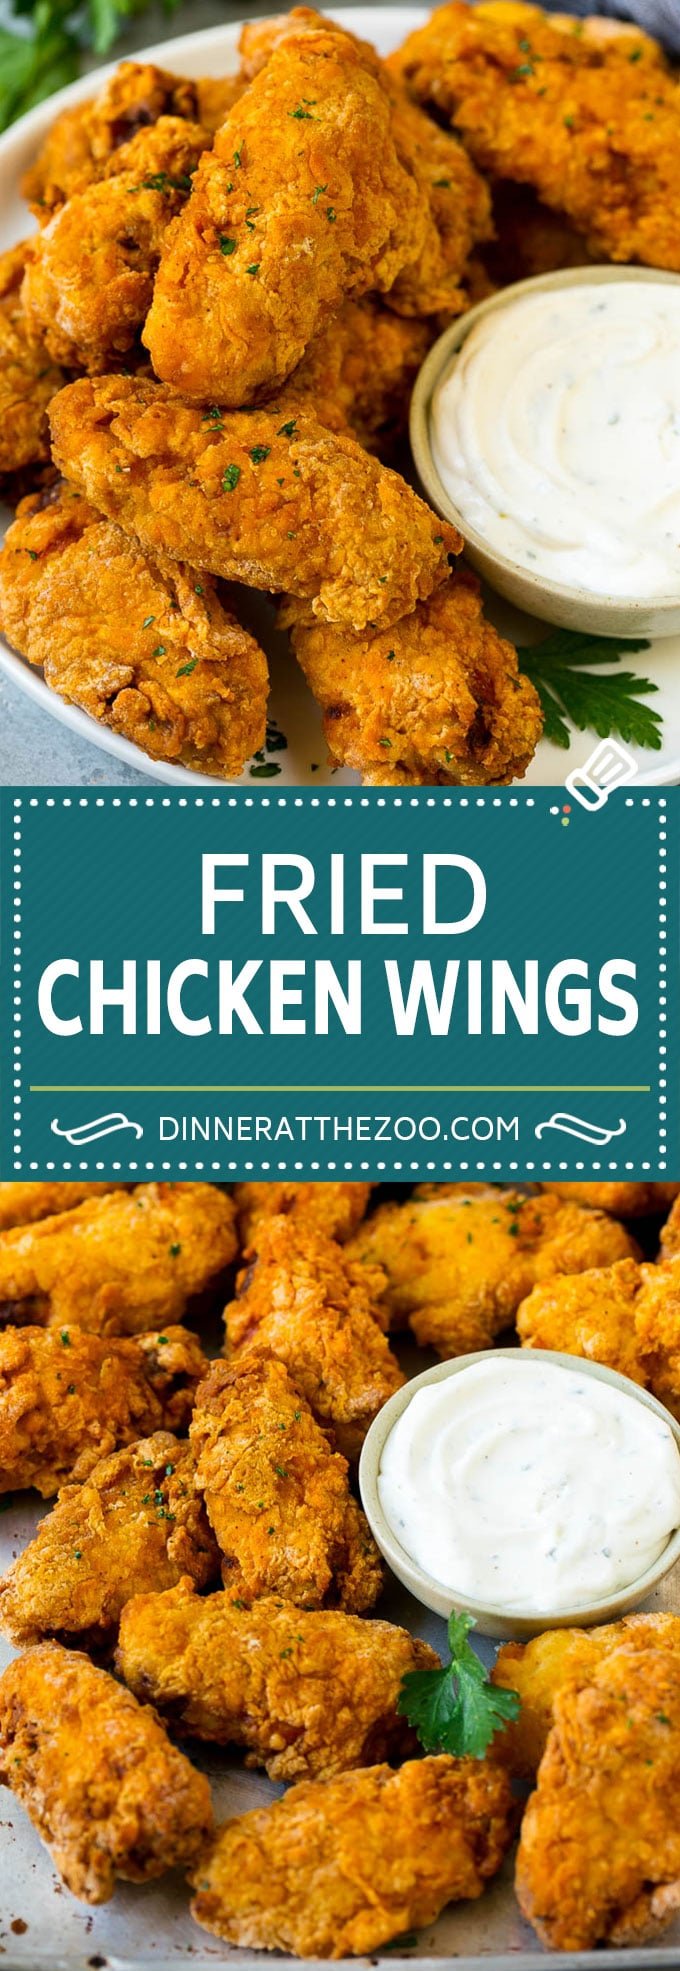 Fried Chicken Wings Recipe | Chicken Wings #chicken #chickenwings #appetizer #snack #dinner #dinneratthezoo